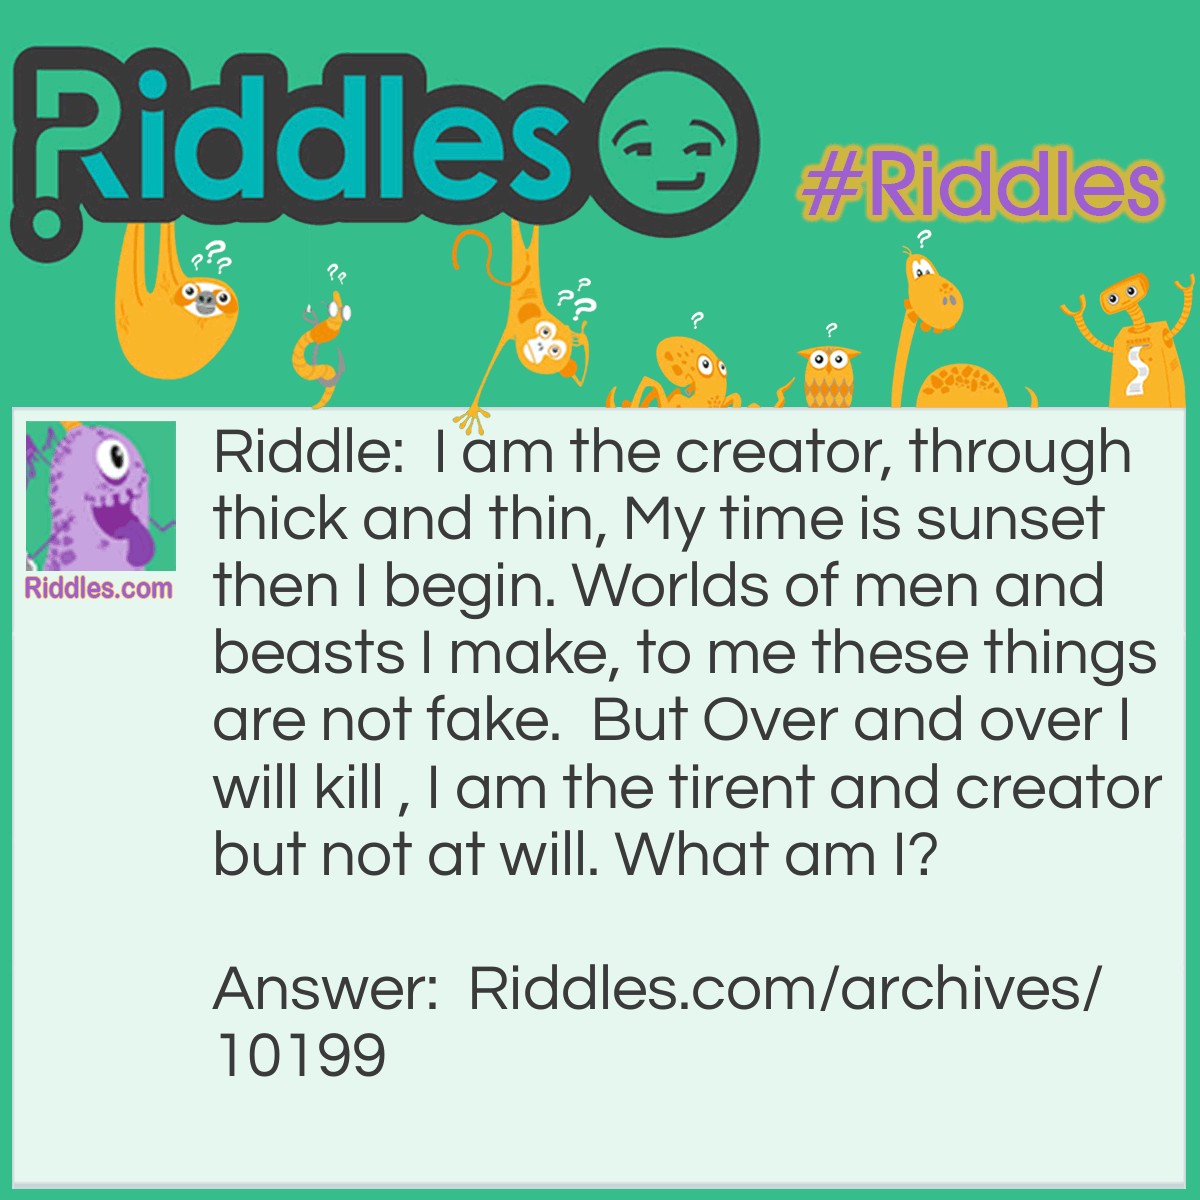 - Riddles.com